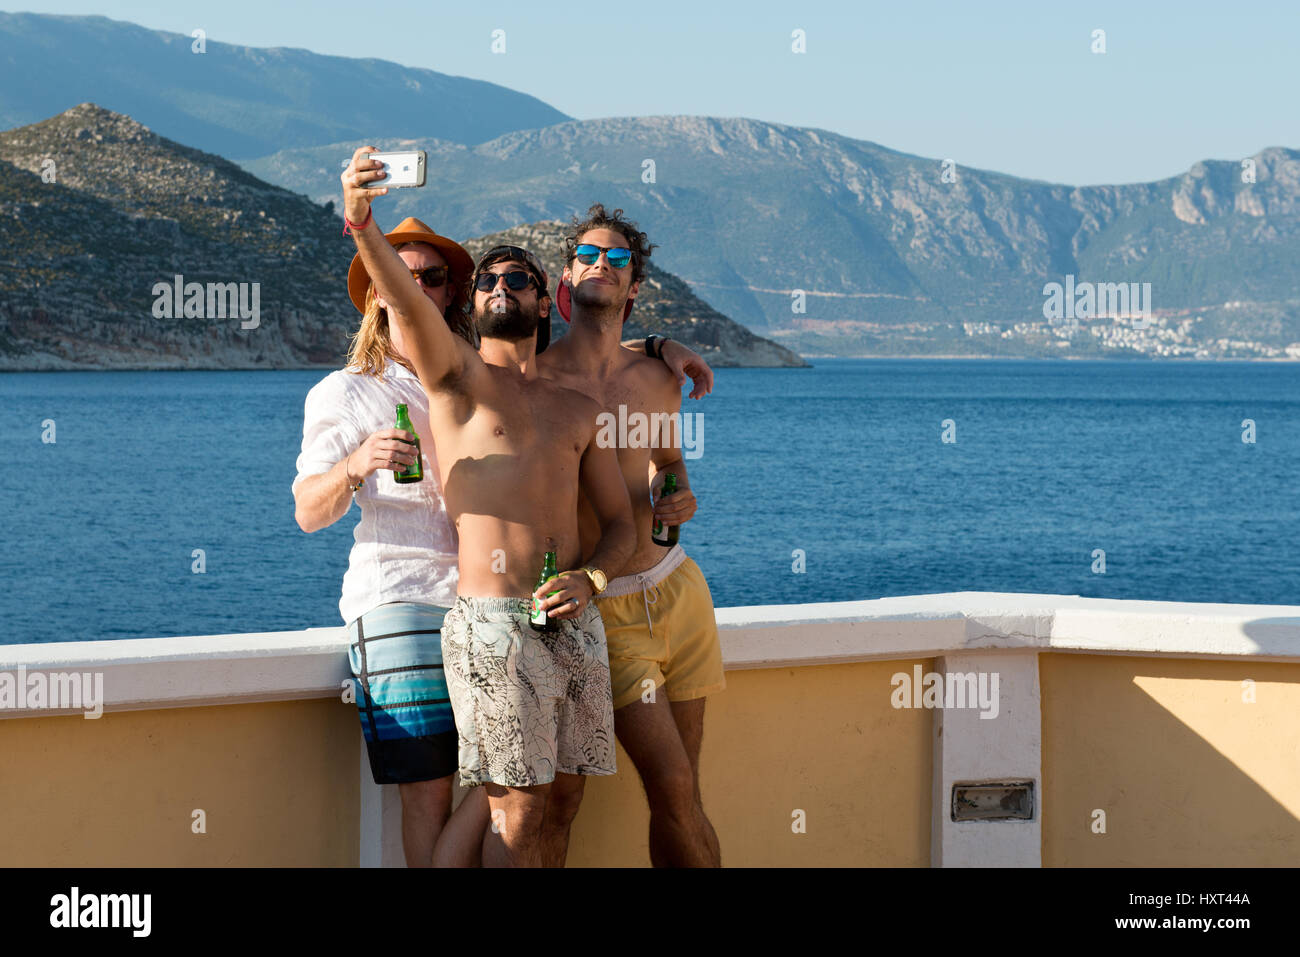 drei junge Männer in Badehosen mit Flaschen machen ein Selfie mit Meer und Küste im Hintergrund, Insel Kastellorizo, Dodekanes, Griechenland Stock Photo